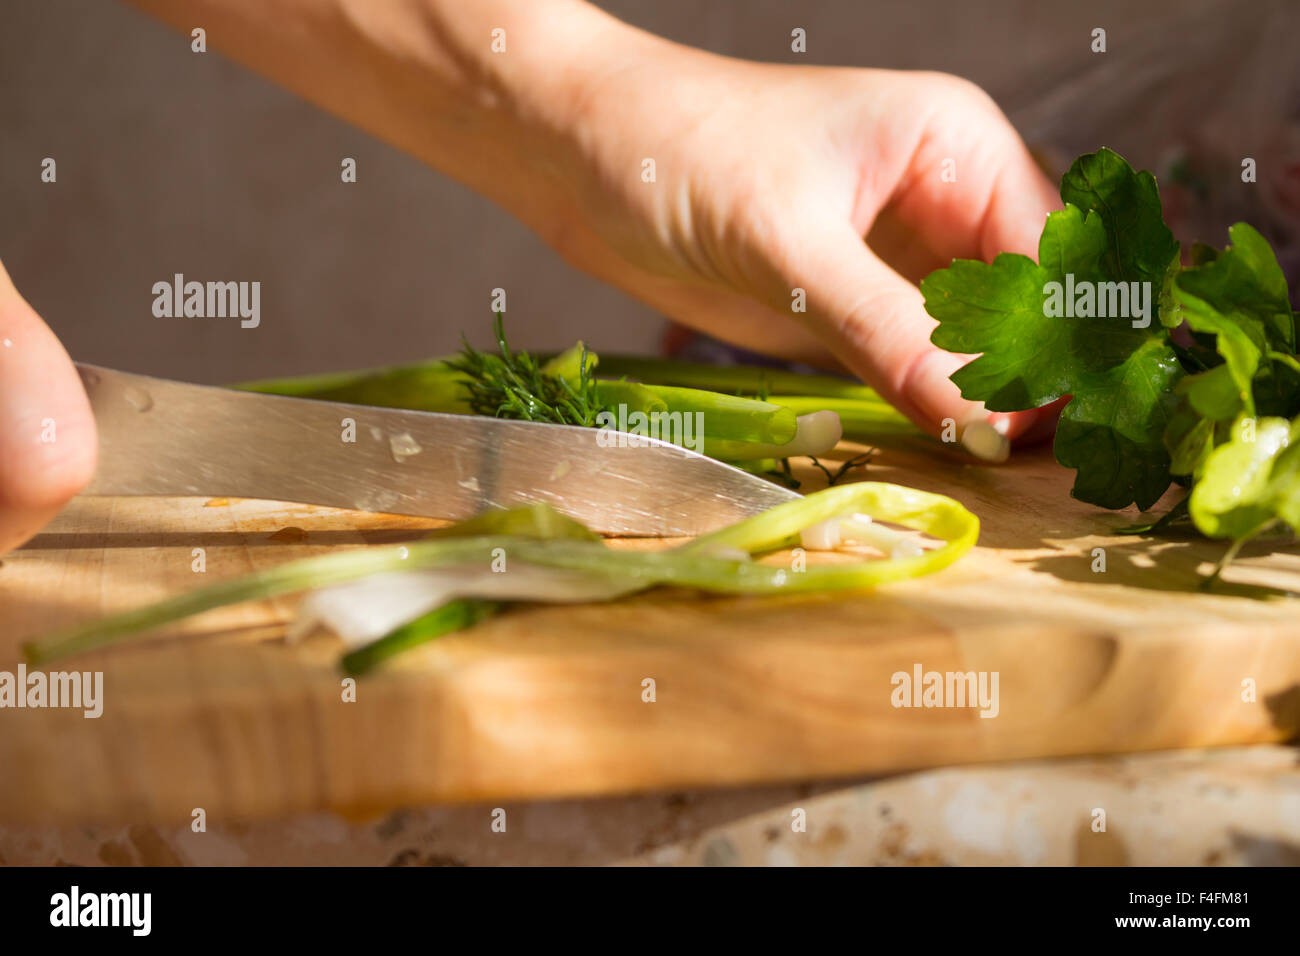 Le persil et aneth sur planche à découper en bois. Préparation de la salade de légumes / légumes frais/salade fraîche avec de l'huile d'olive Banque D'Images